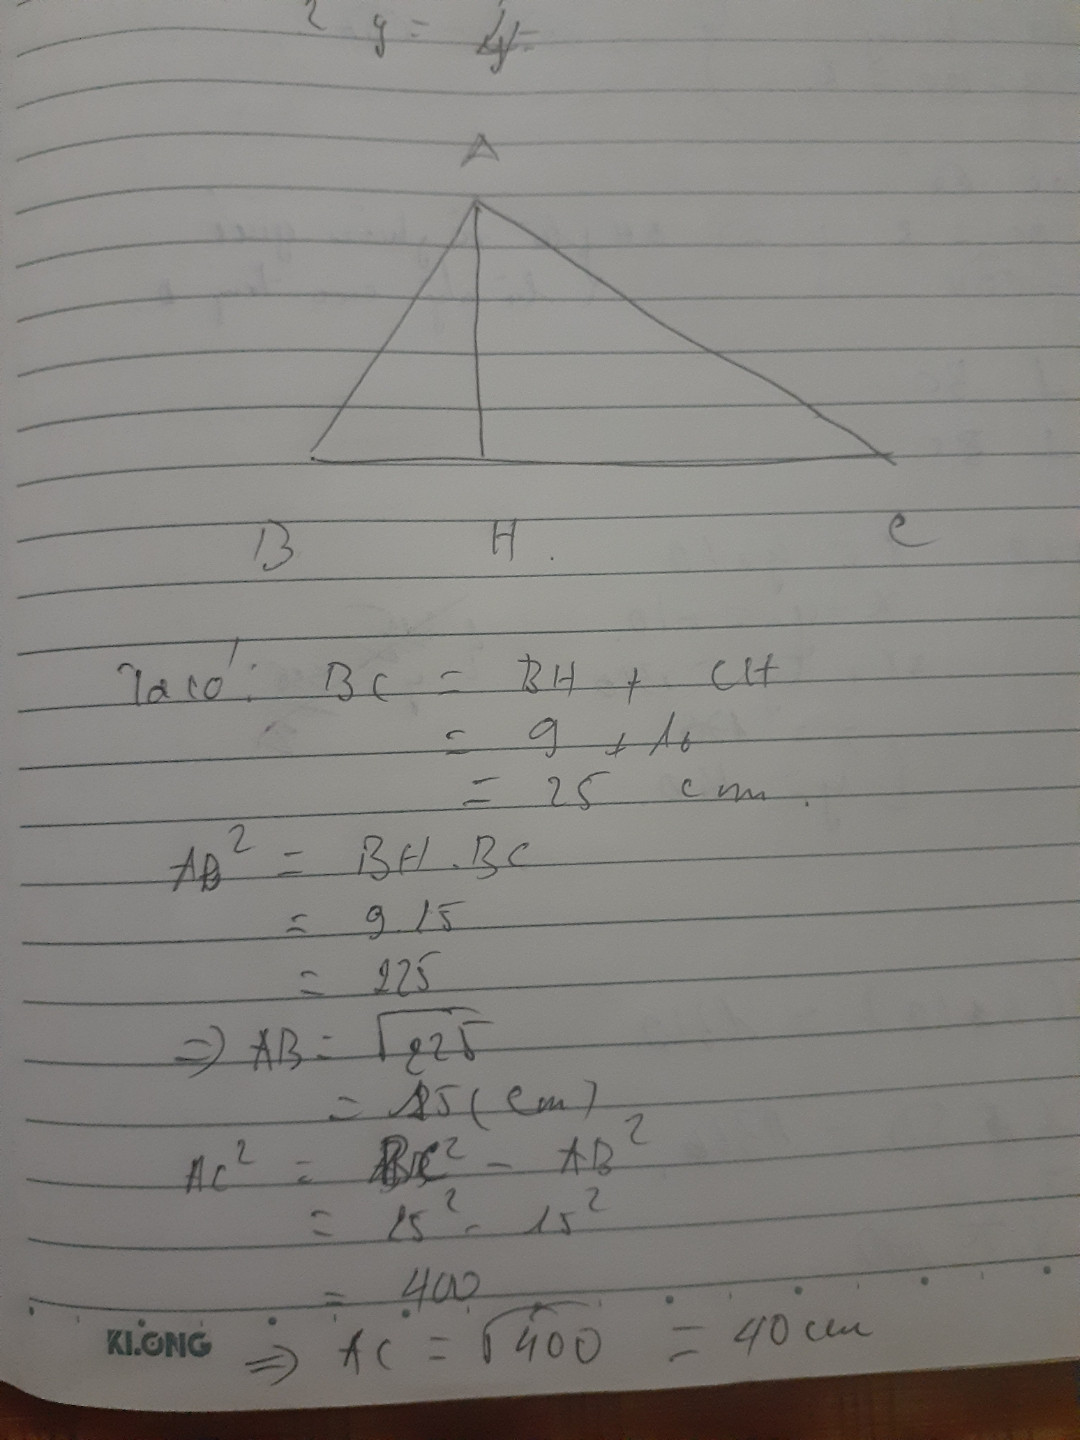 giúp em vớii !
Cho tam giác ABC vuông tại A, đường cao AH (H thuộc BC). Biết BH = 9 cm, CH = 16 cm. Giải tam giác ABC